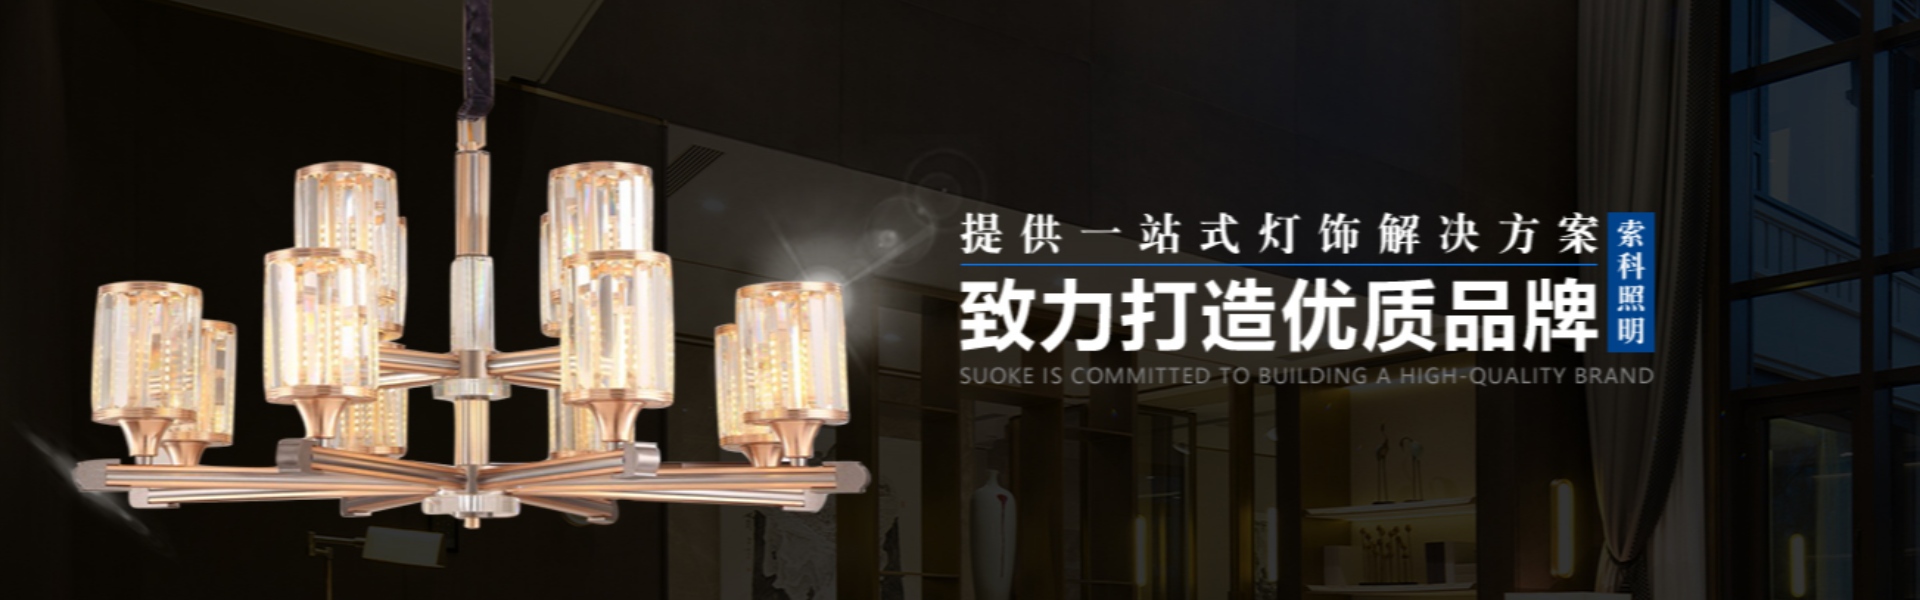 οικιακός φωτισμός, εξωτερικός φωτισμός, ηλιακός φωτισμός,Zhongshan Suoke Lighting Electric Co., Ltd.